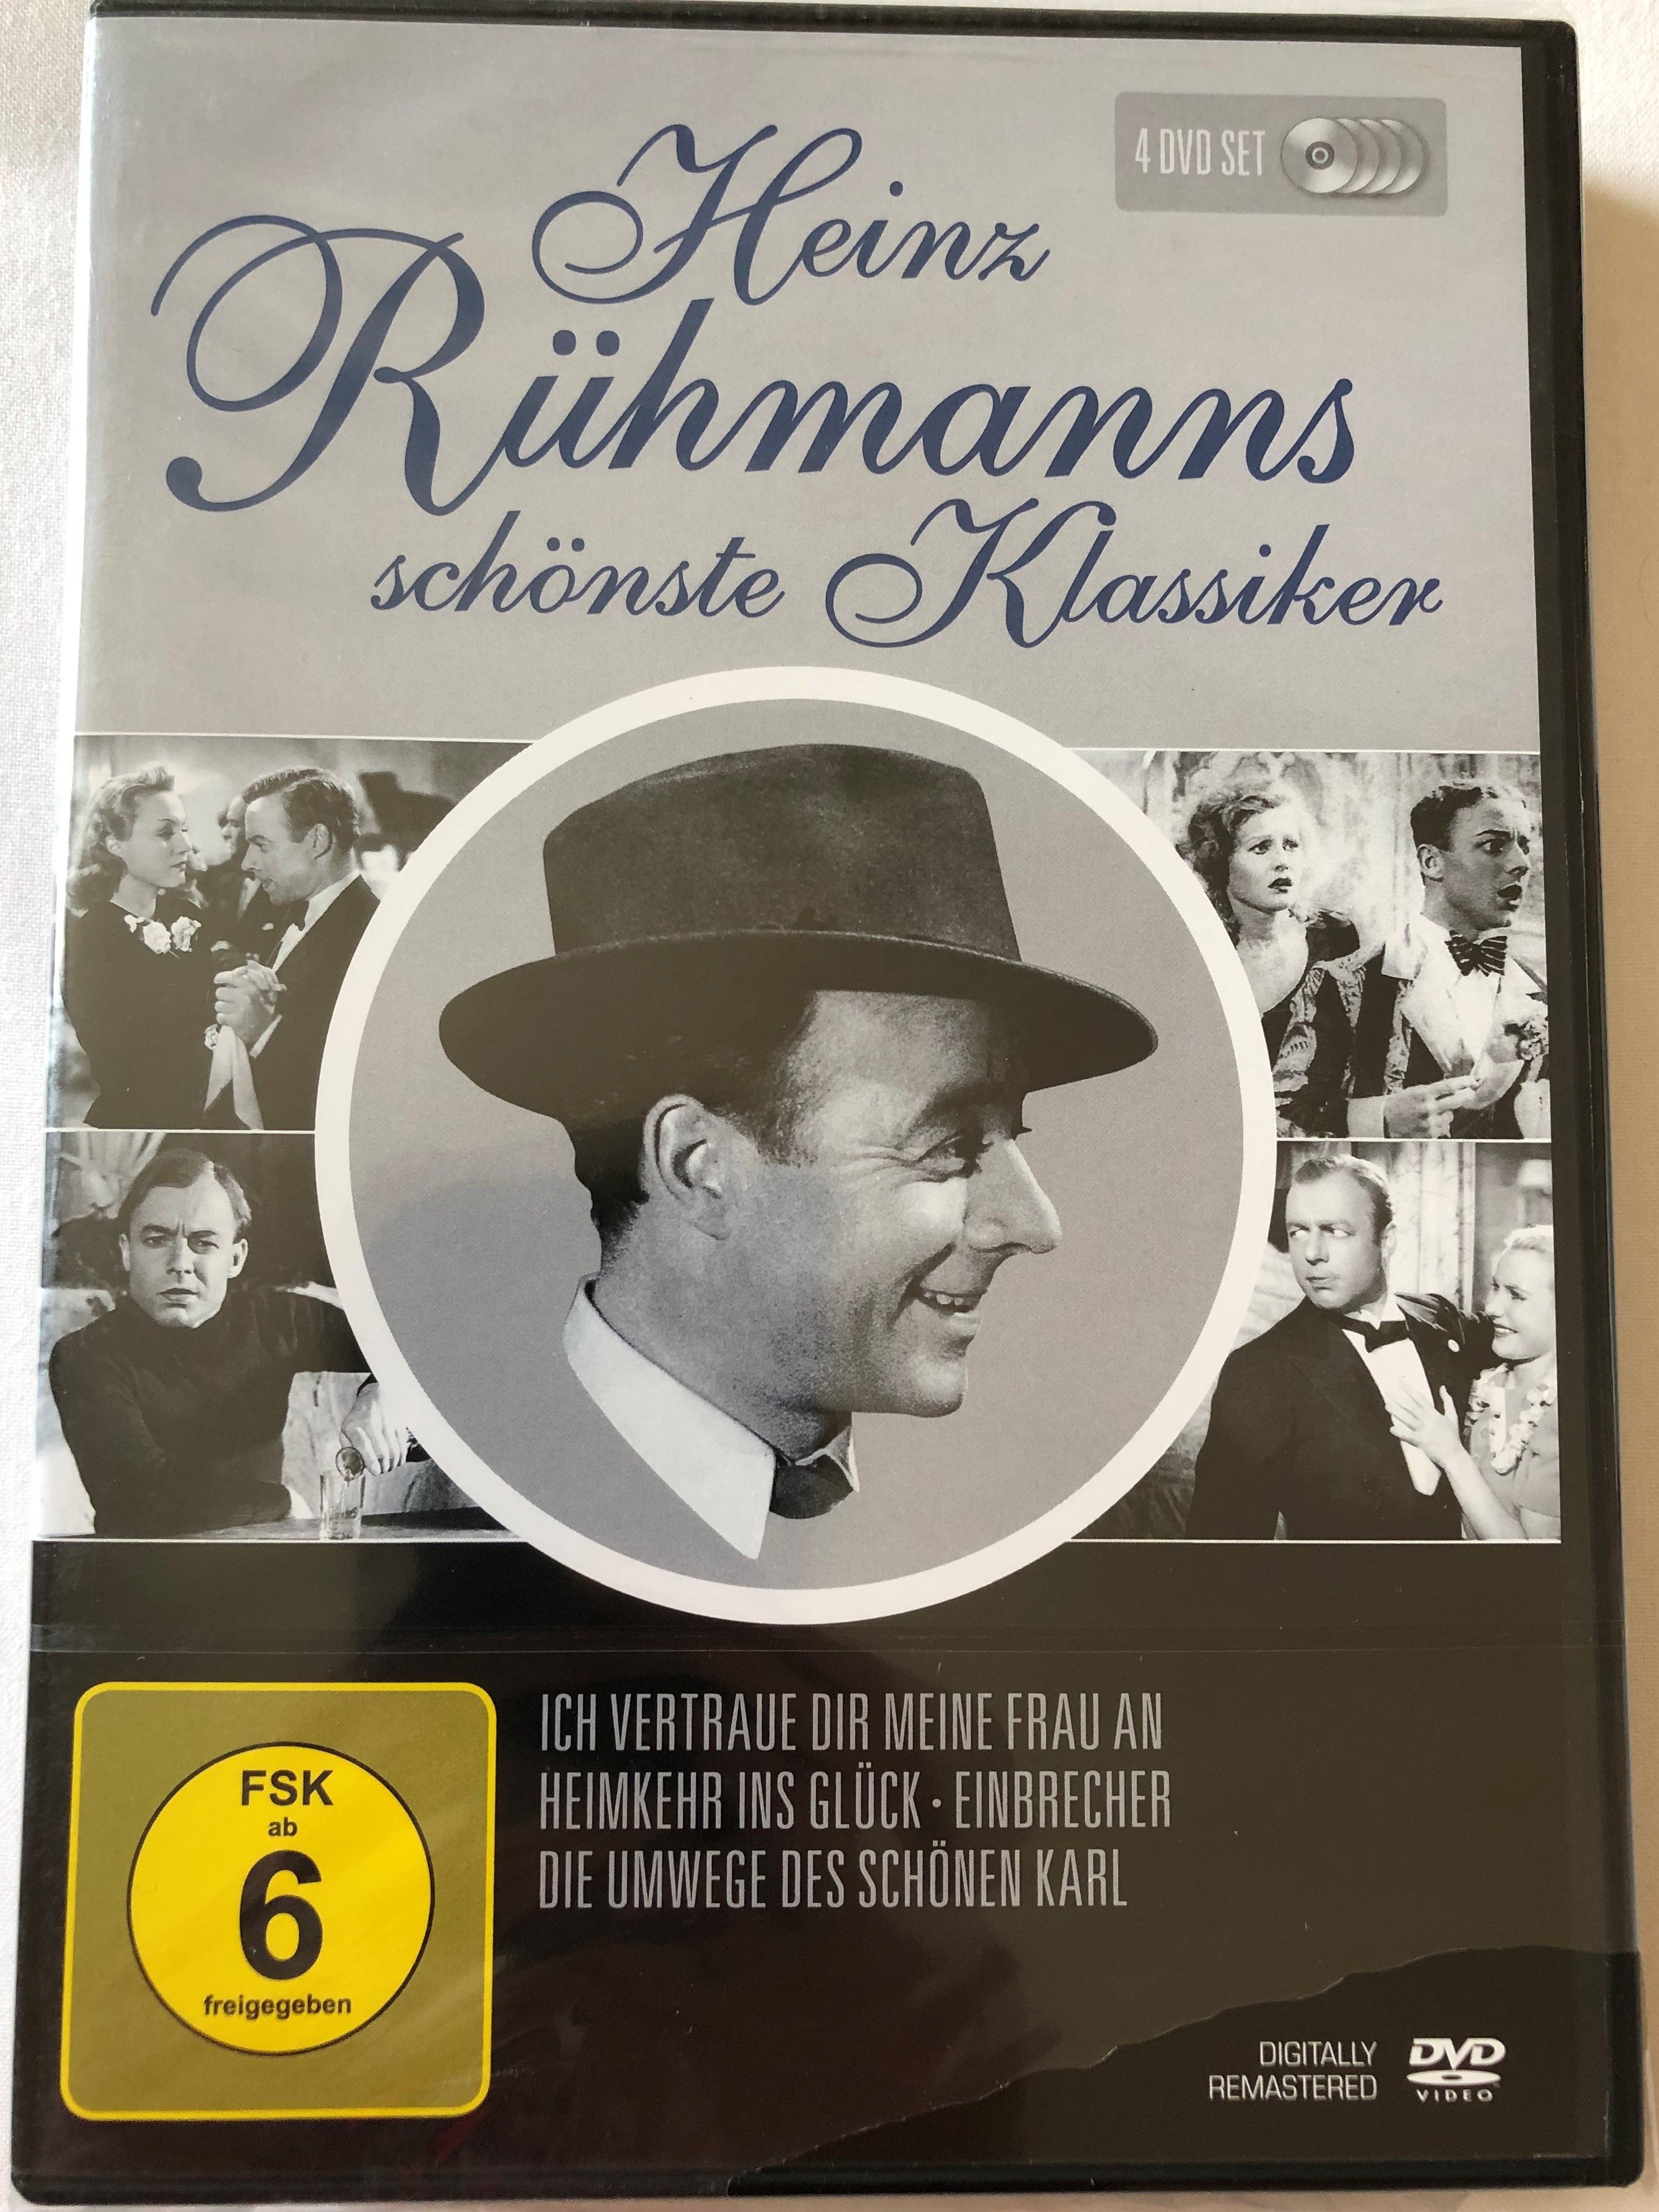 heinz-r-hmanns-sch-nste-klassiker-4-dvd-set-ich-vertraue-dir-meine-frau-an-heimkehr-ins-gl-ck-einbrecher-die-umwege-des-sch-nen-karl-heinz-r-hmann-s-most-beautiful-classics-deutsche-filmklassiker-1-.jpg